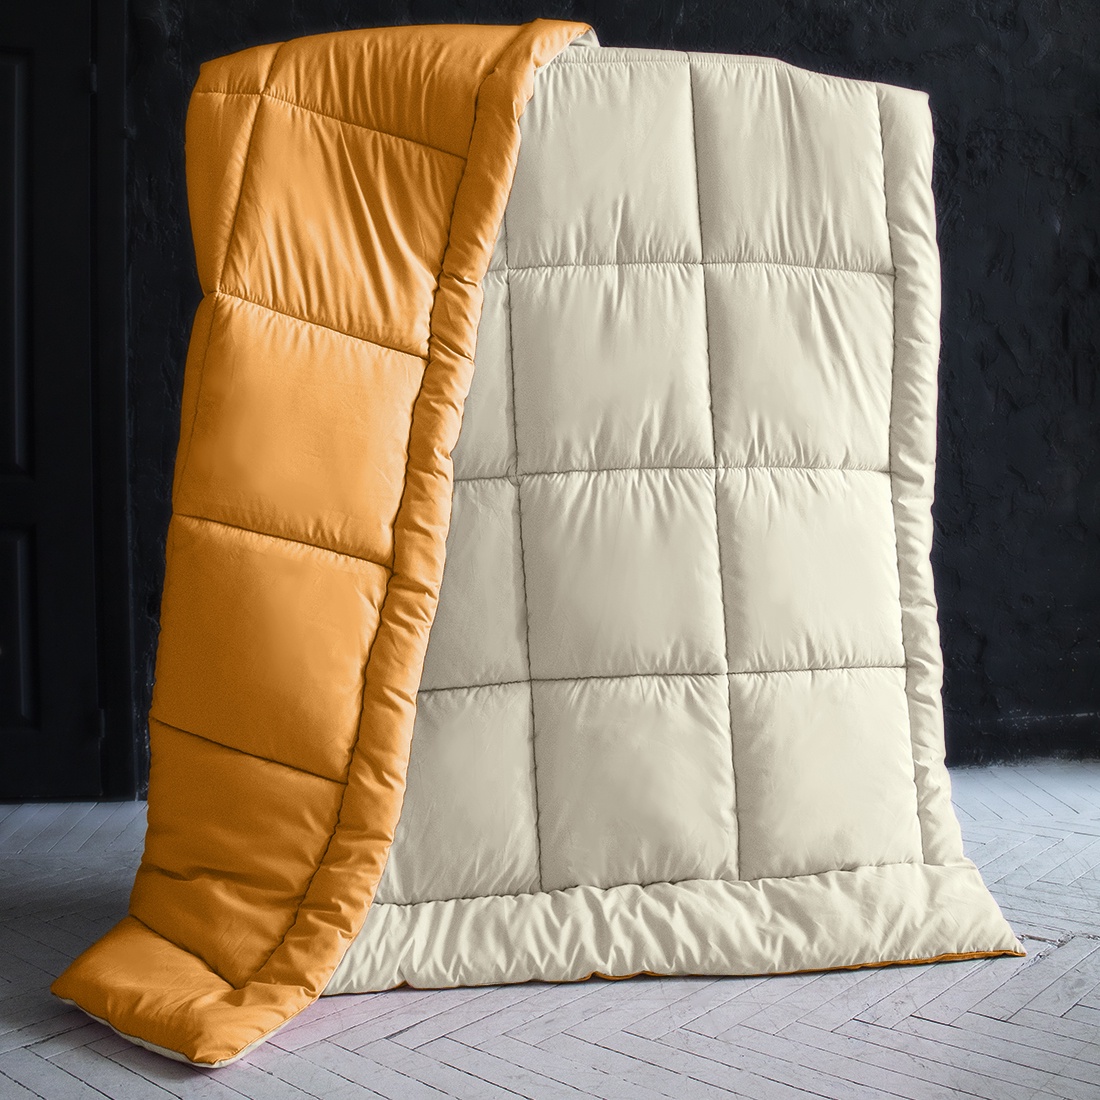 фото Одеяло "SleepiX", Мультиколор, цвет: кремовый, оранжевый, 220х240 см Sleep ix